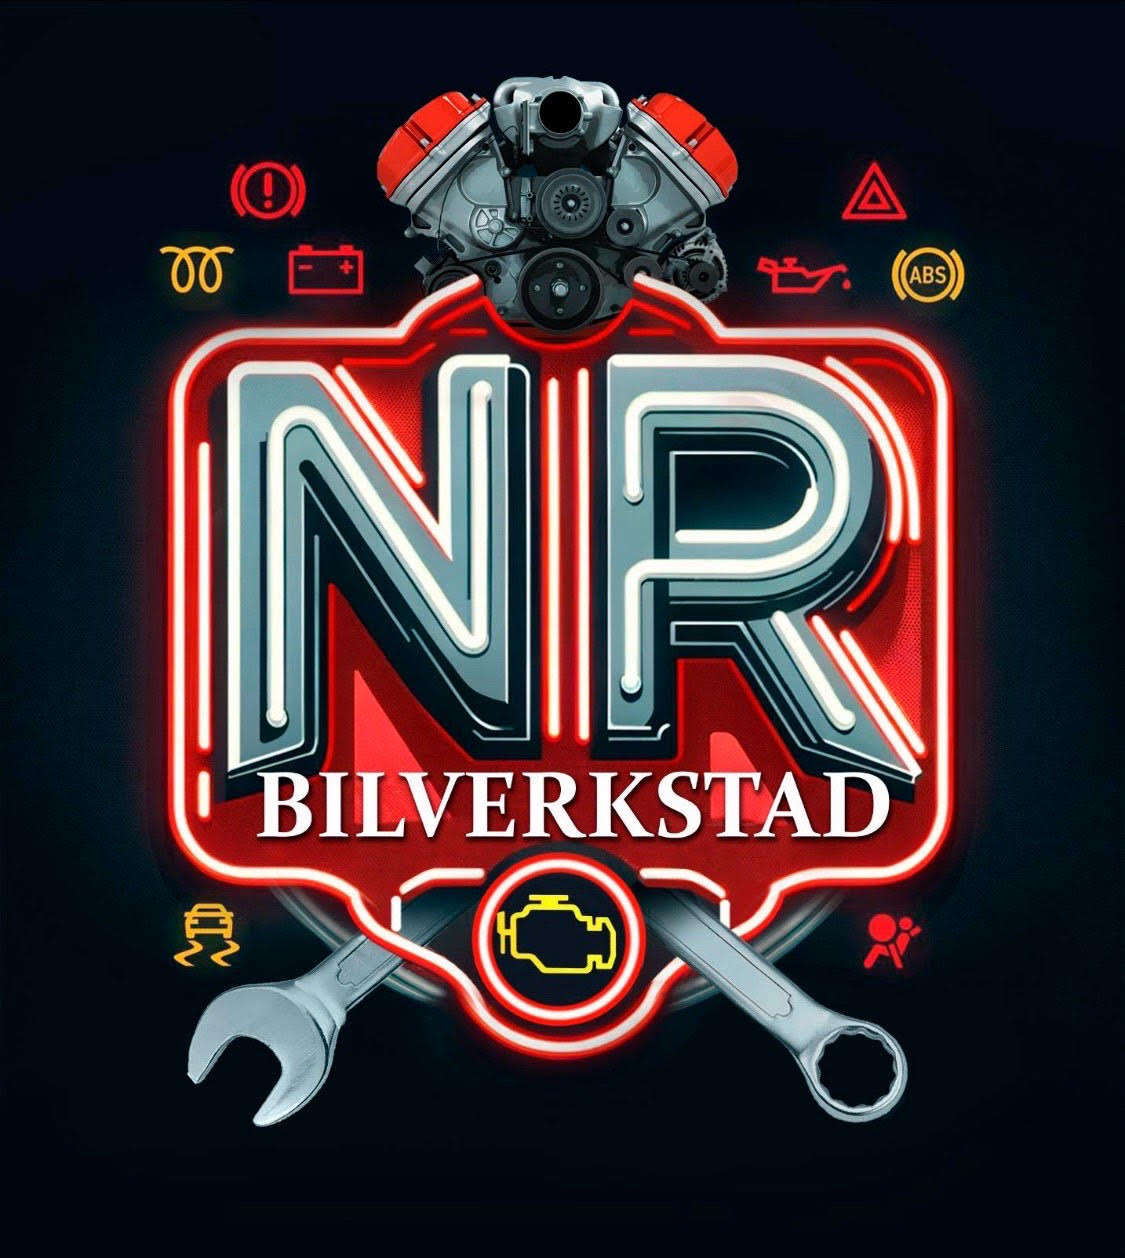 NR Bilverkstad logo